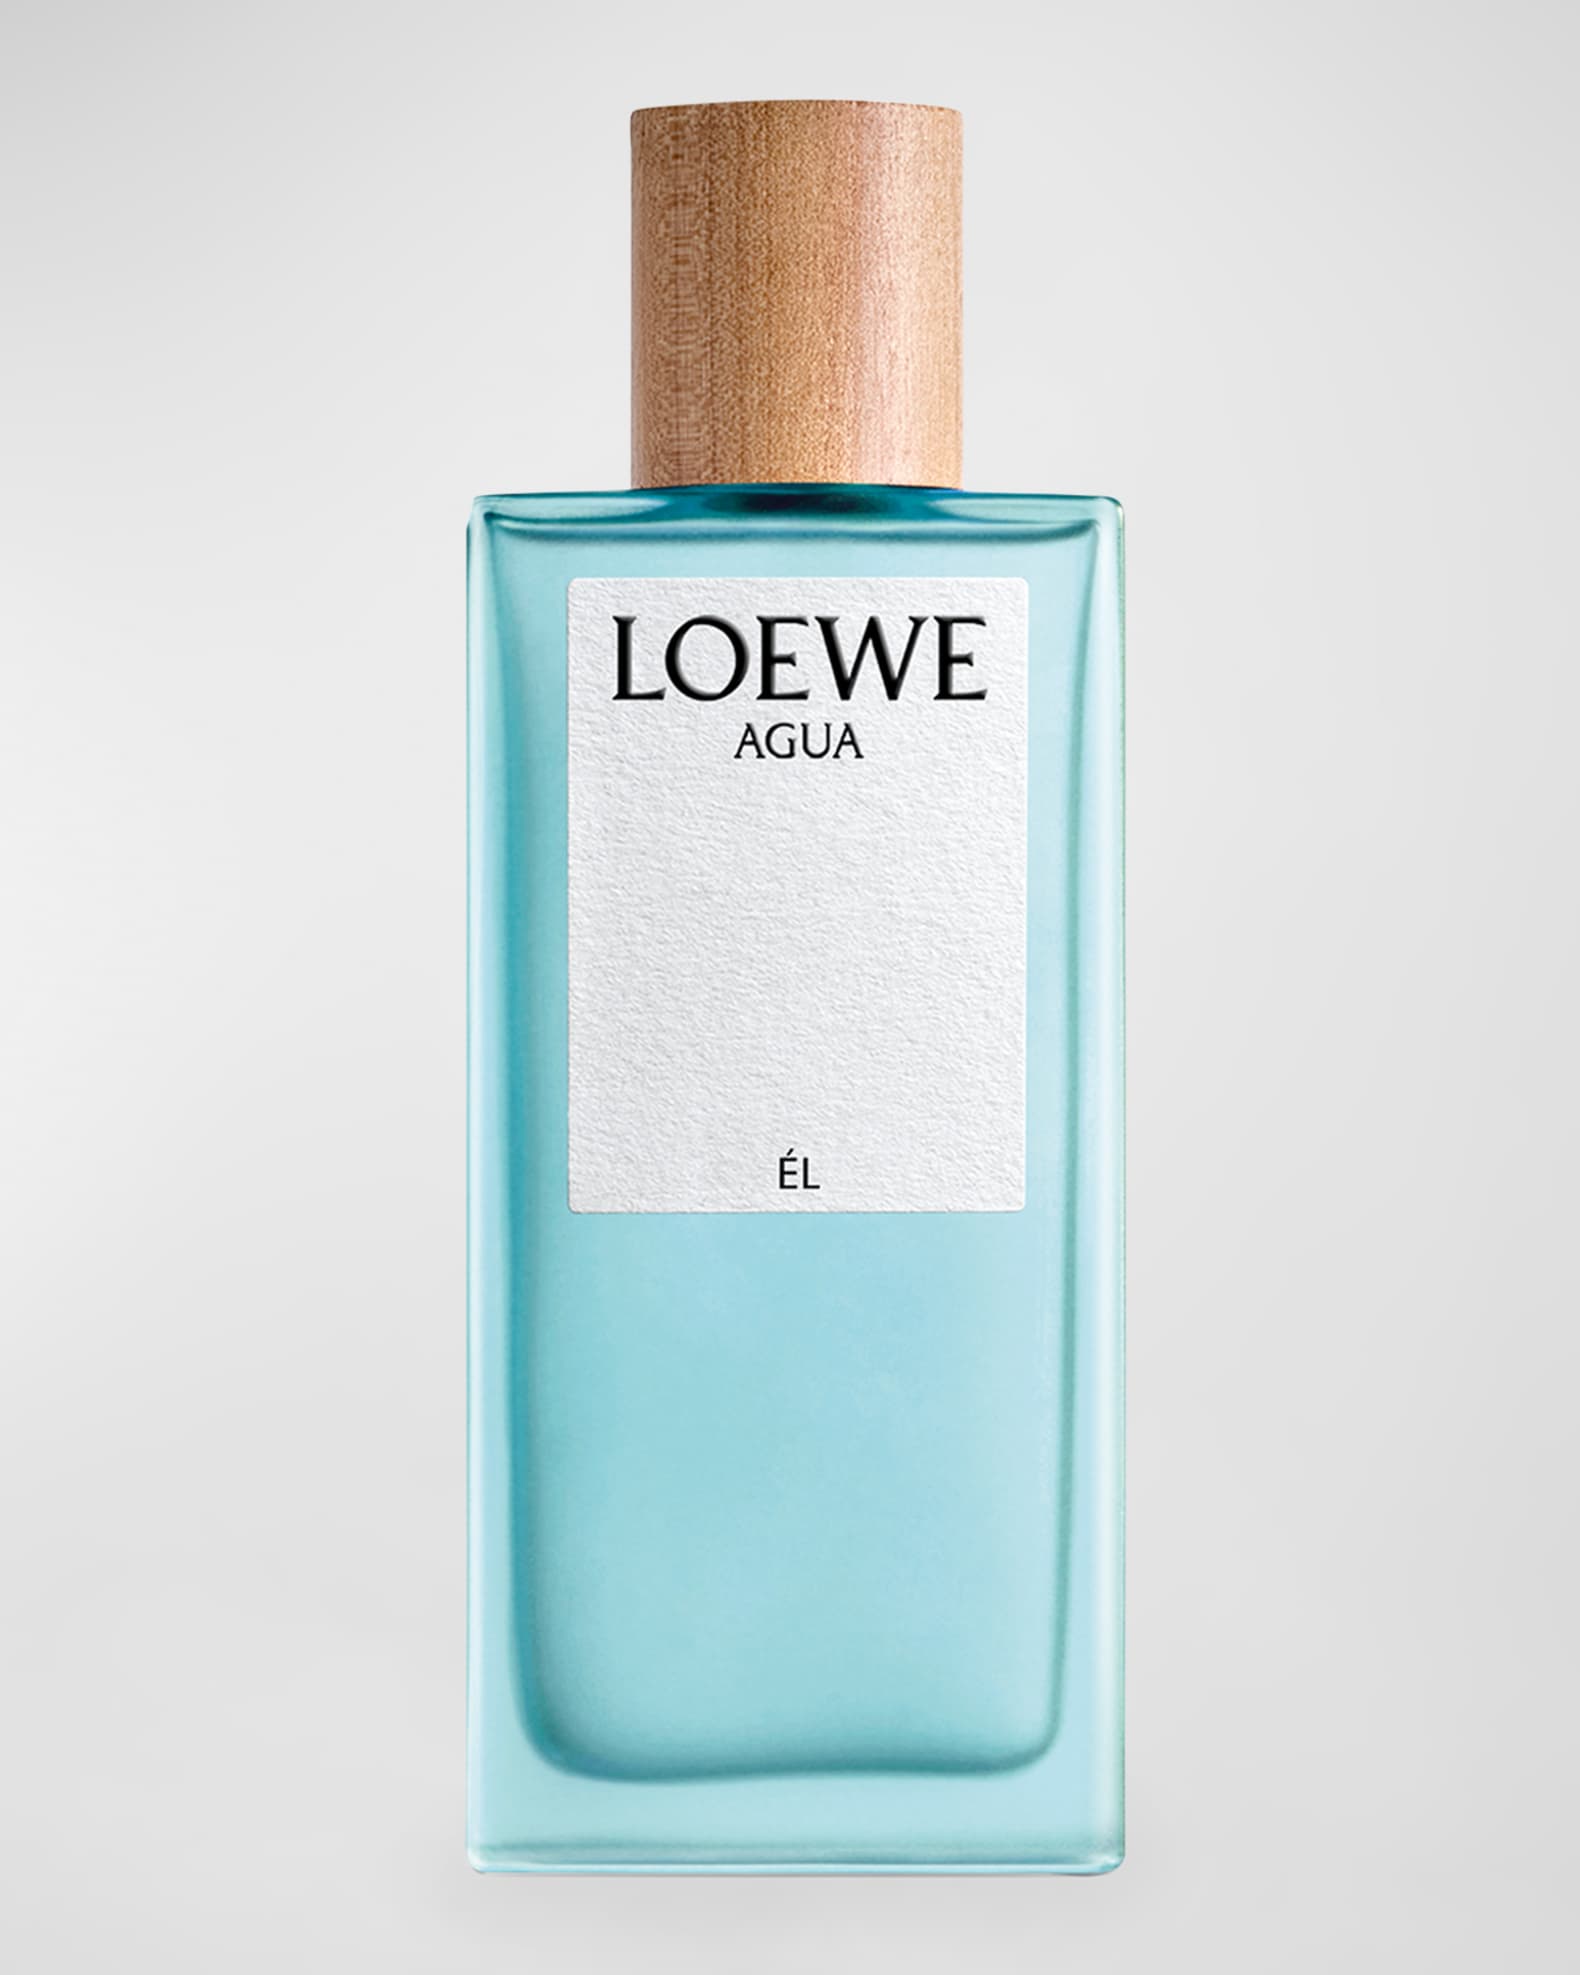 Boy Eau de Parfum Chanel perfume - a fragrance for women and men 2016